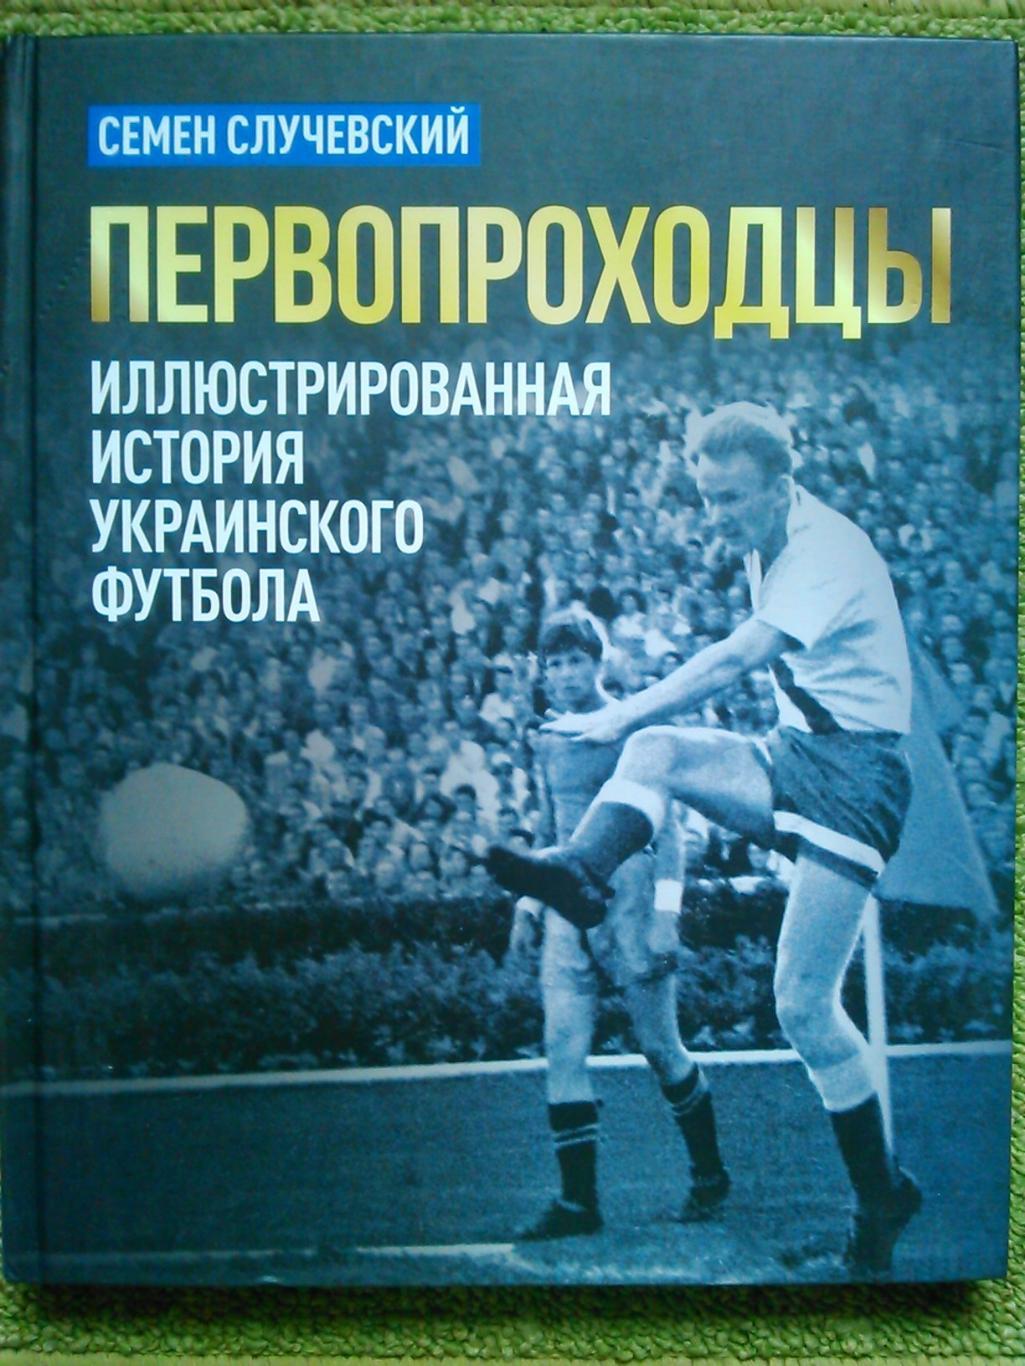 ПЕРВОПРОХОДЦЫ. Иллюстрированная история украинского футбола. Оптом скидки до 50%